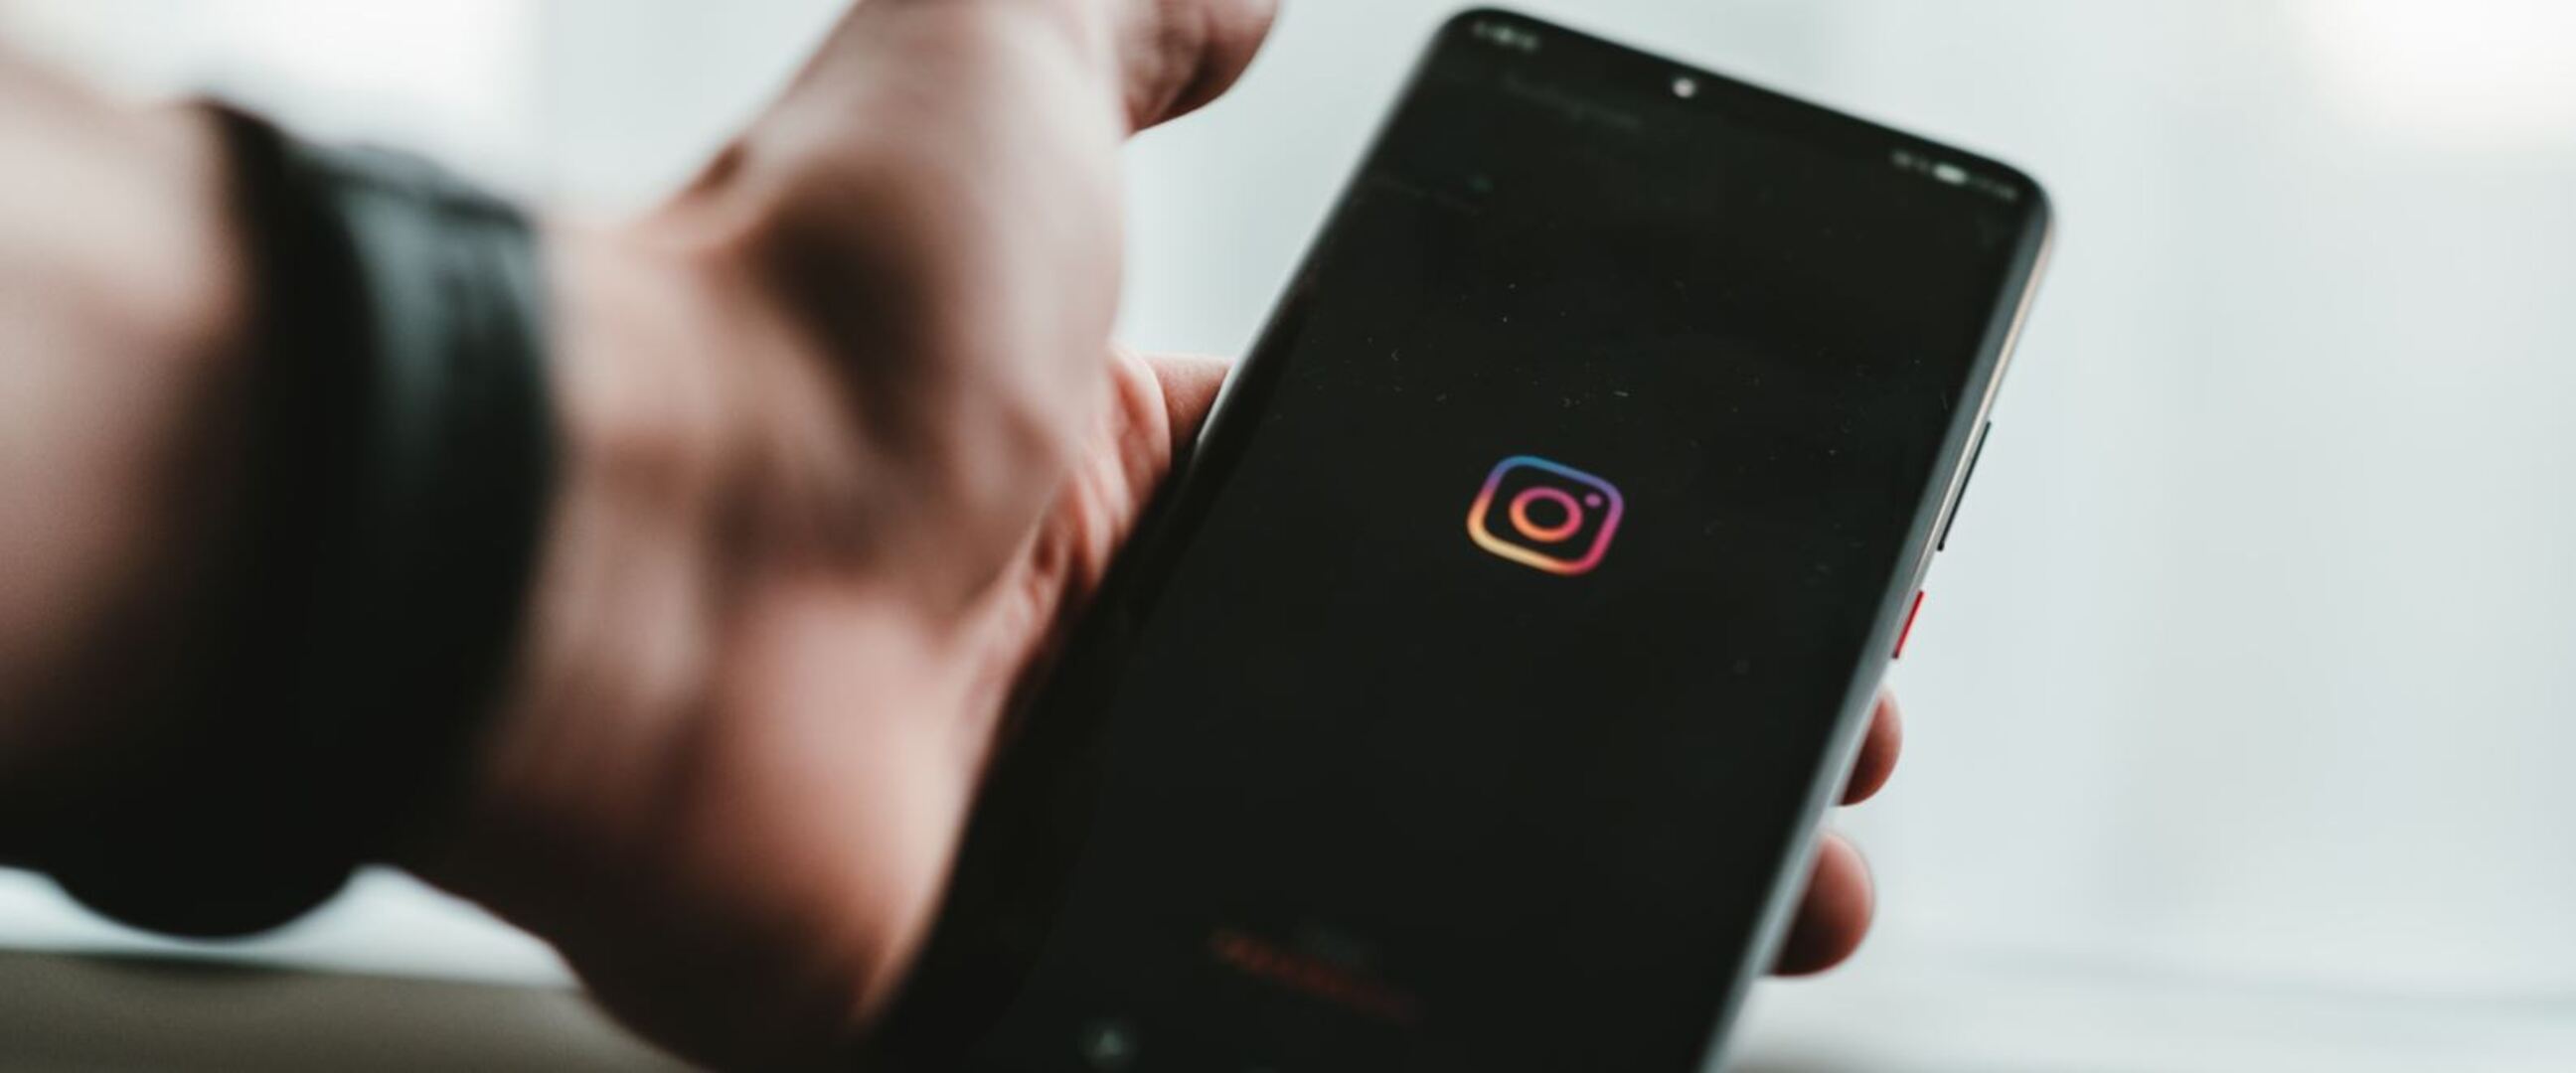 Fitur terbaru Instagram, lapor masalah aplikasi cukup goyangkan ponsel